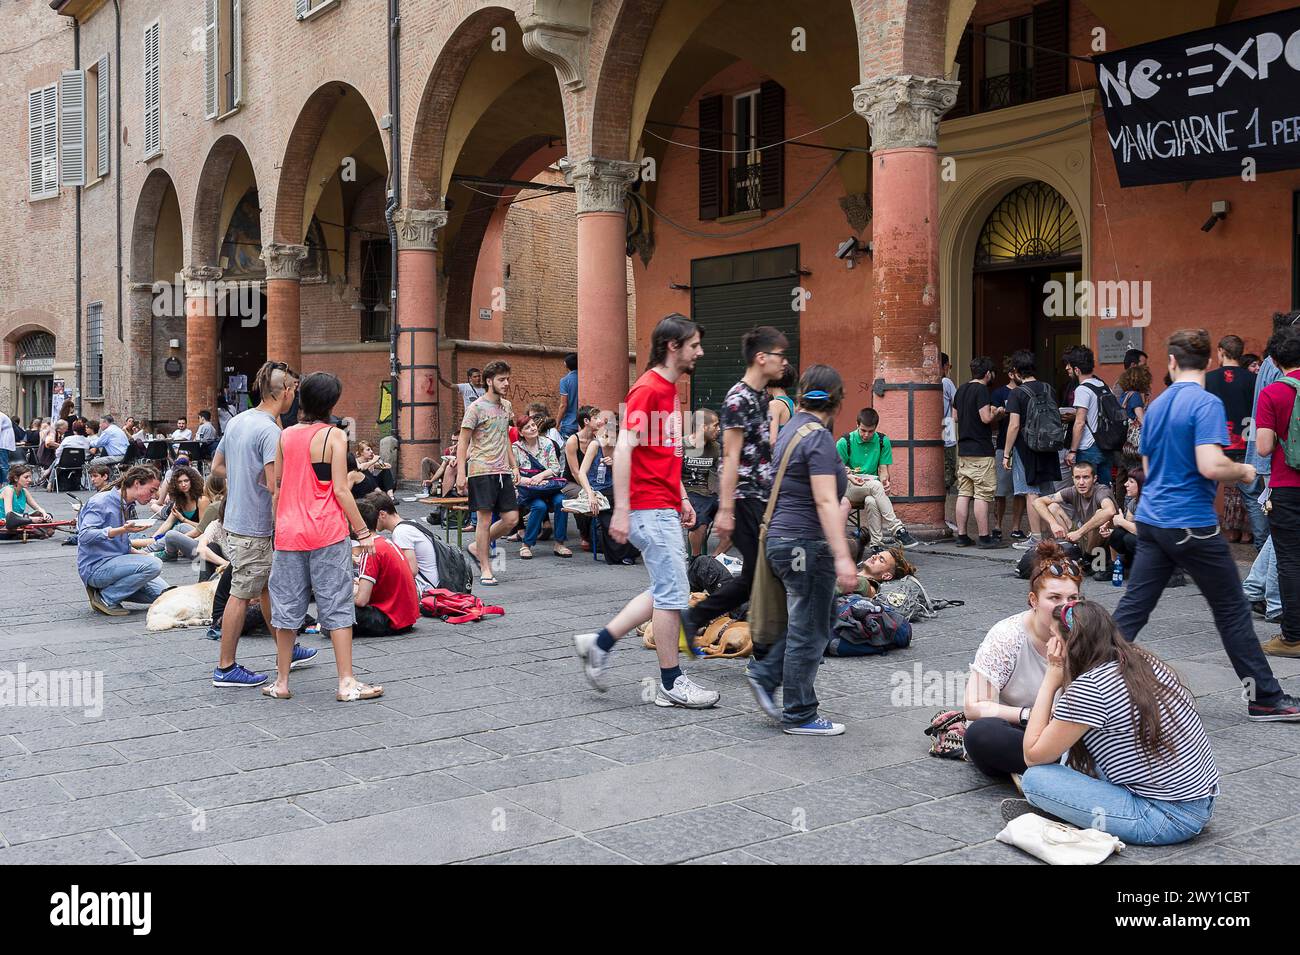 Vie Estudiantine in Bologne - auf quadratischem Boden | Studentenleben un Bologna - Assis sur les pavés d'une Place de la cité Stockfoto